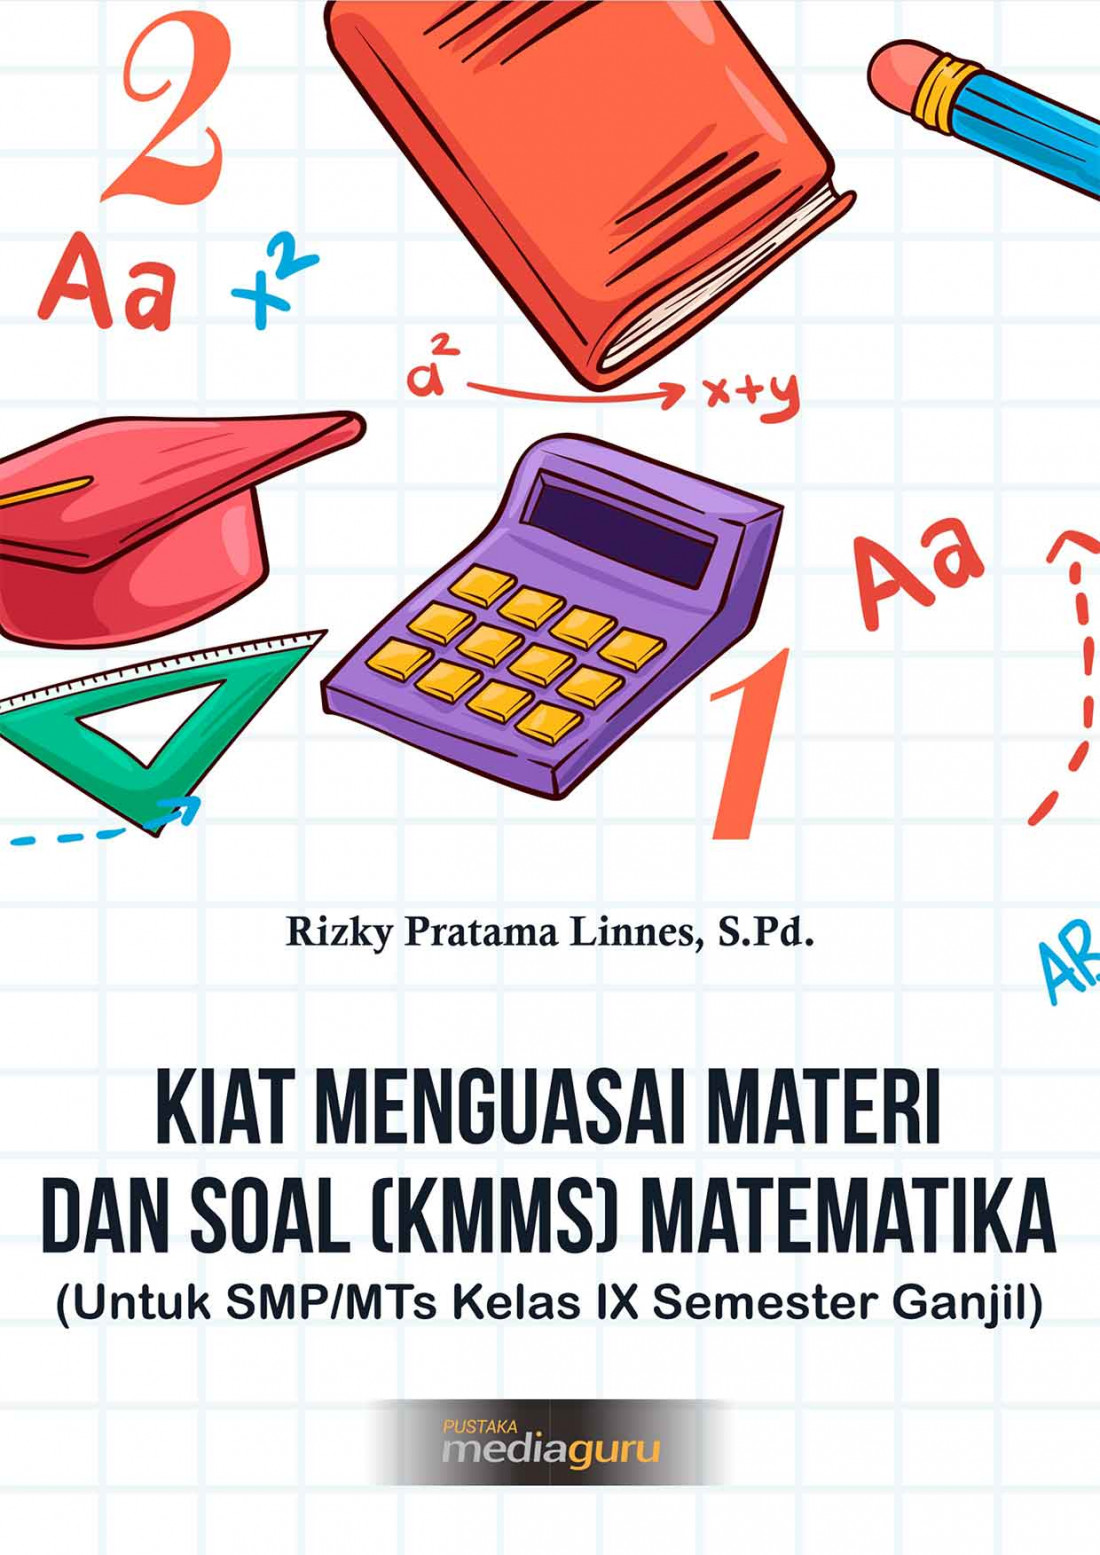 Kiat Menguasai Materi dan Soal (KMMS) Matematika (Untuk SMP/MTs Kelas IX Semester Ganjil)